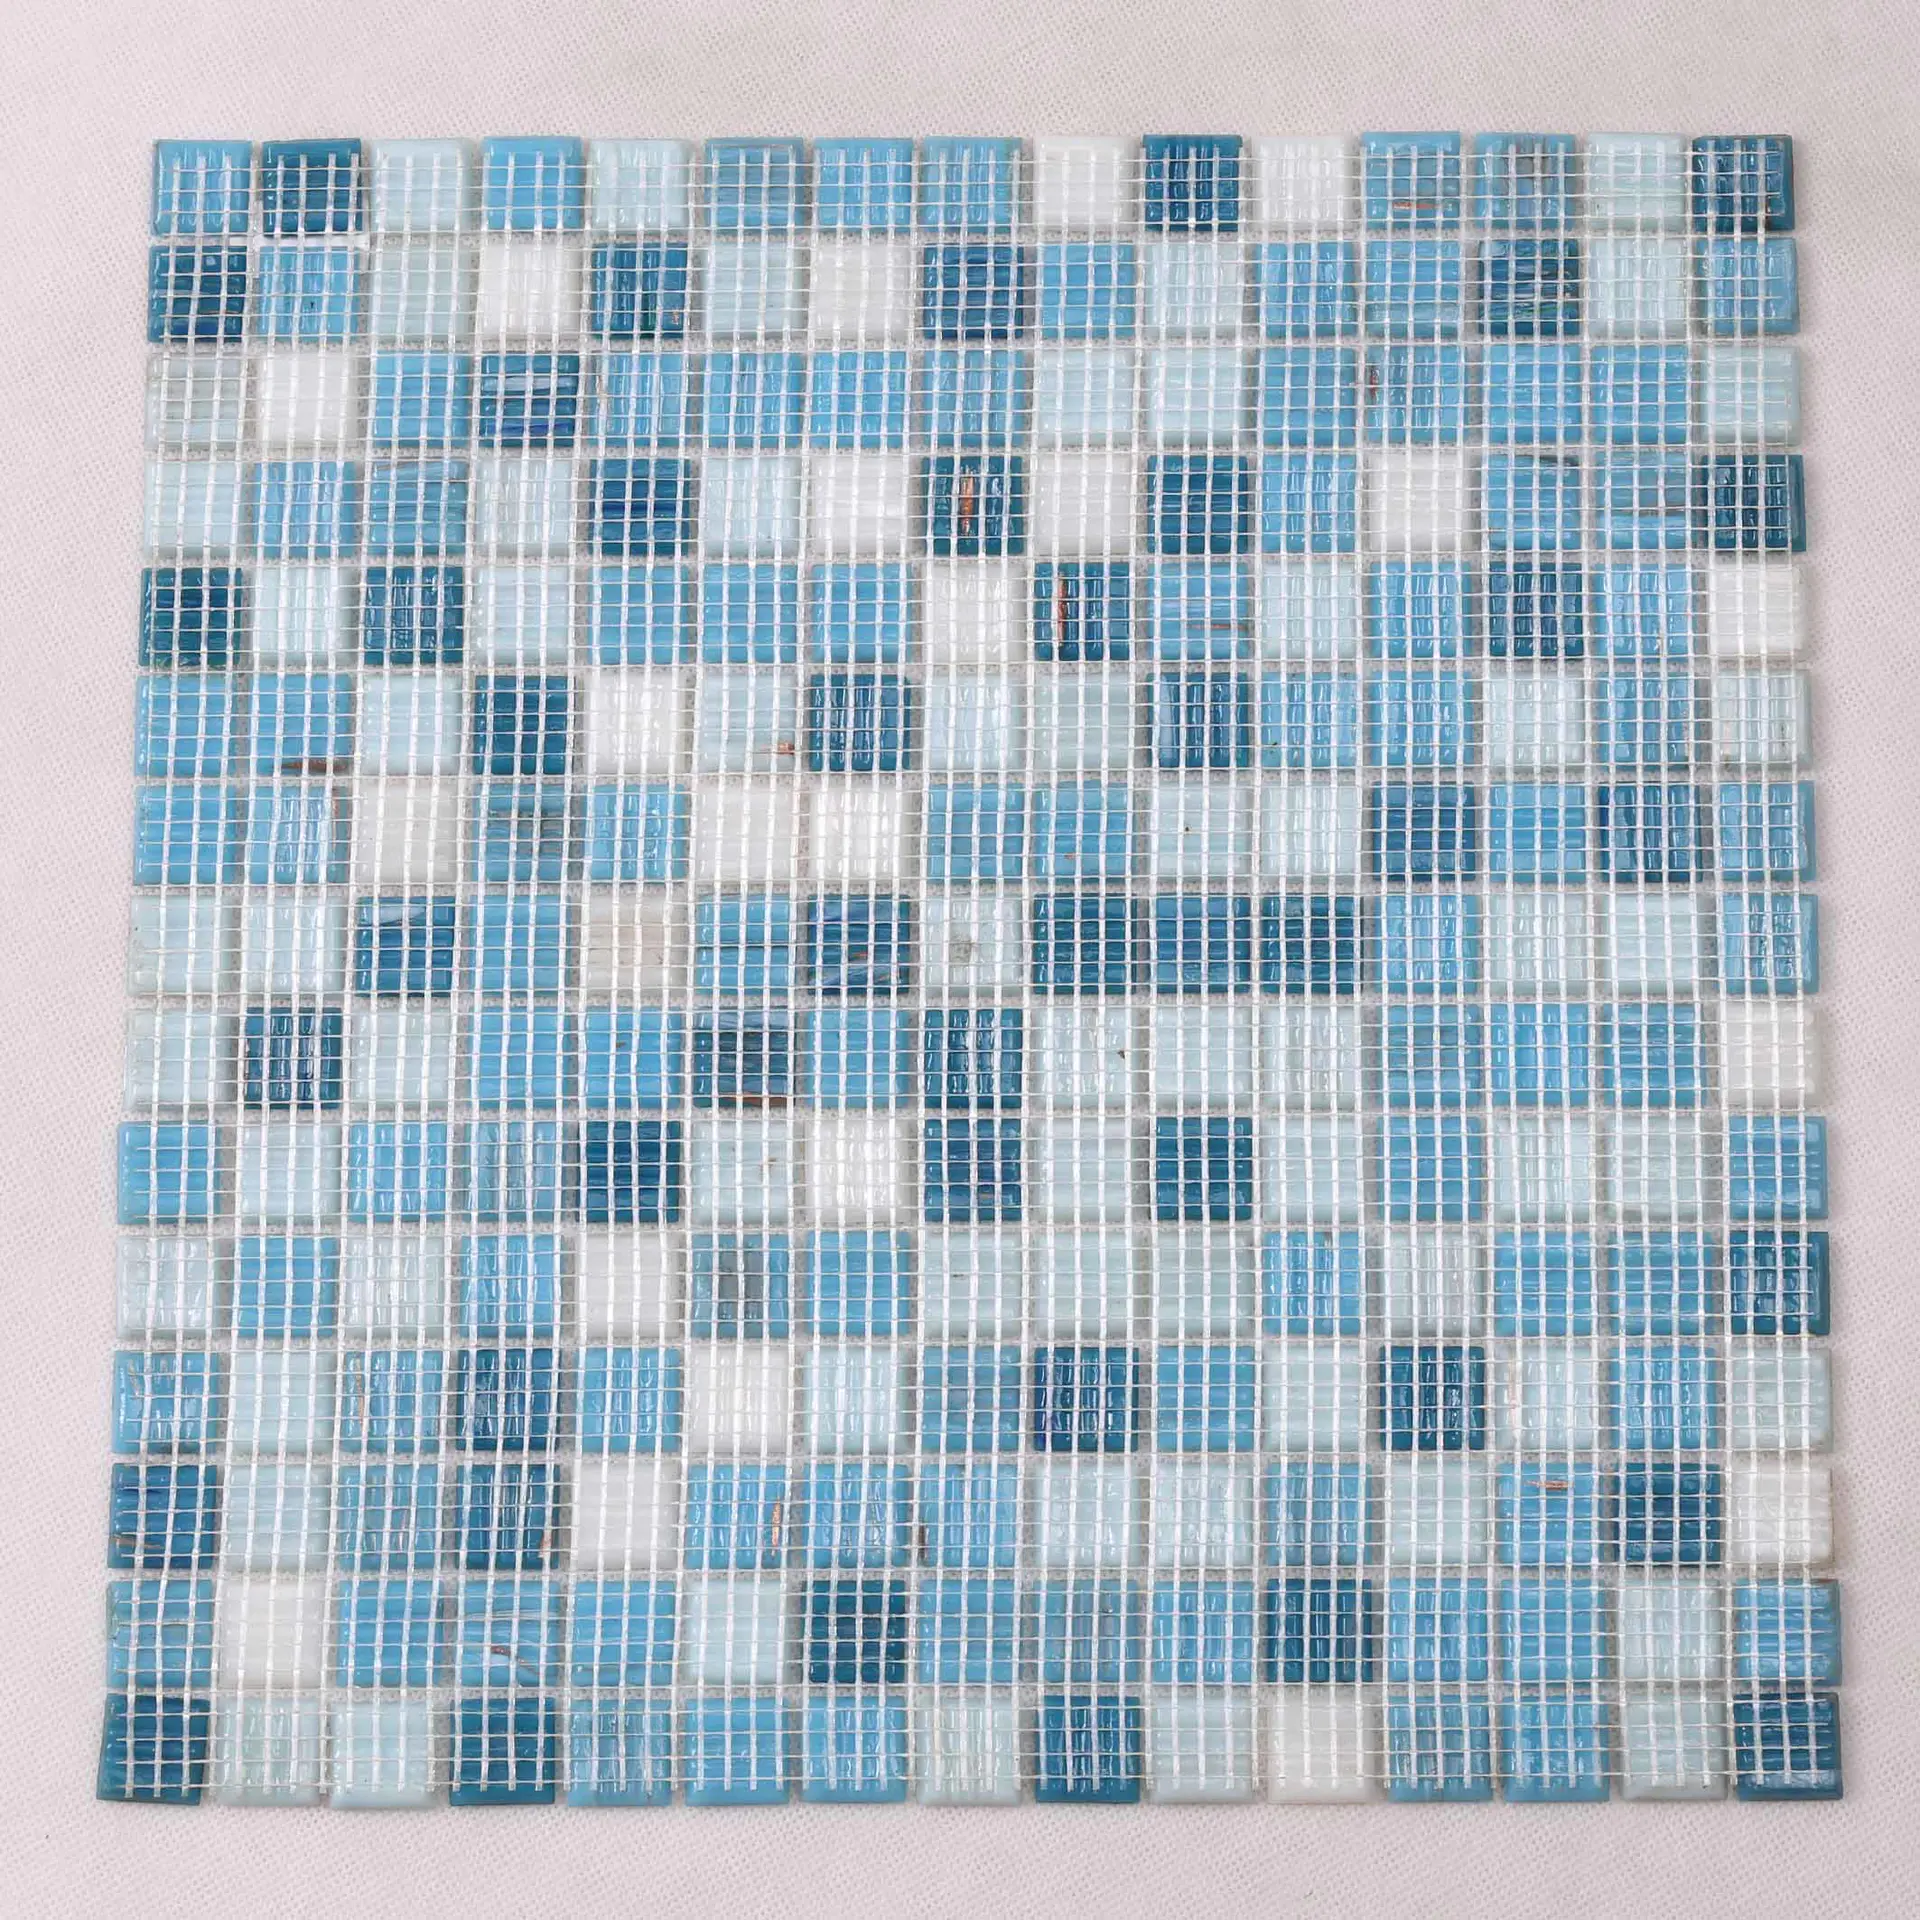 Custom pool tiles blue for business for spa